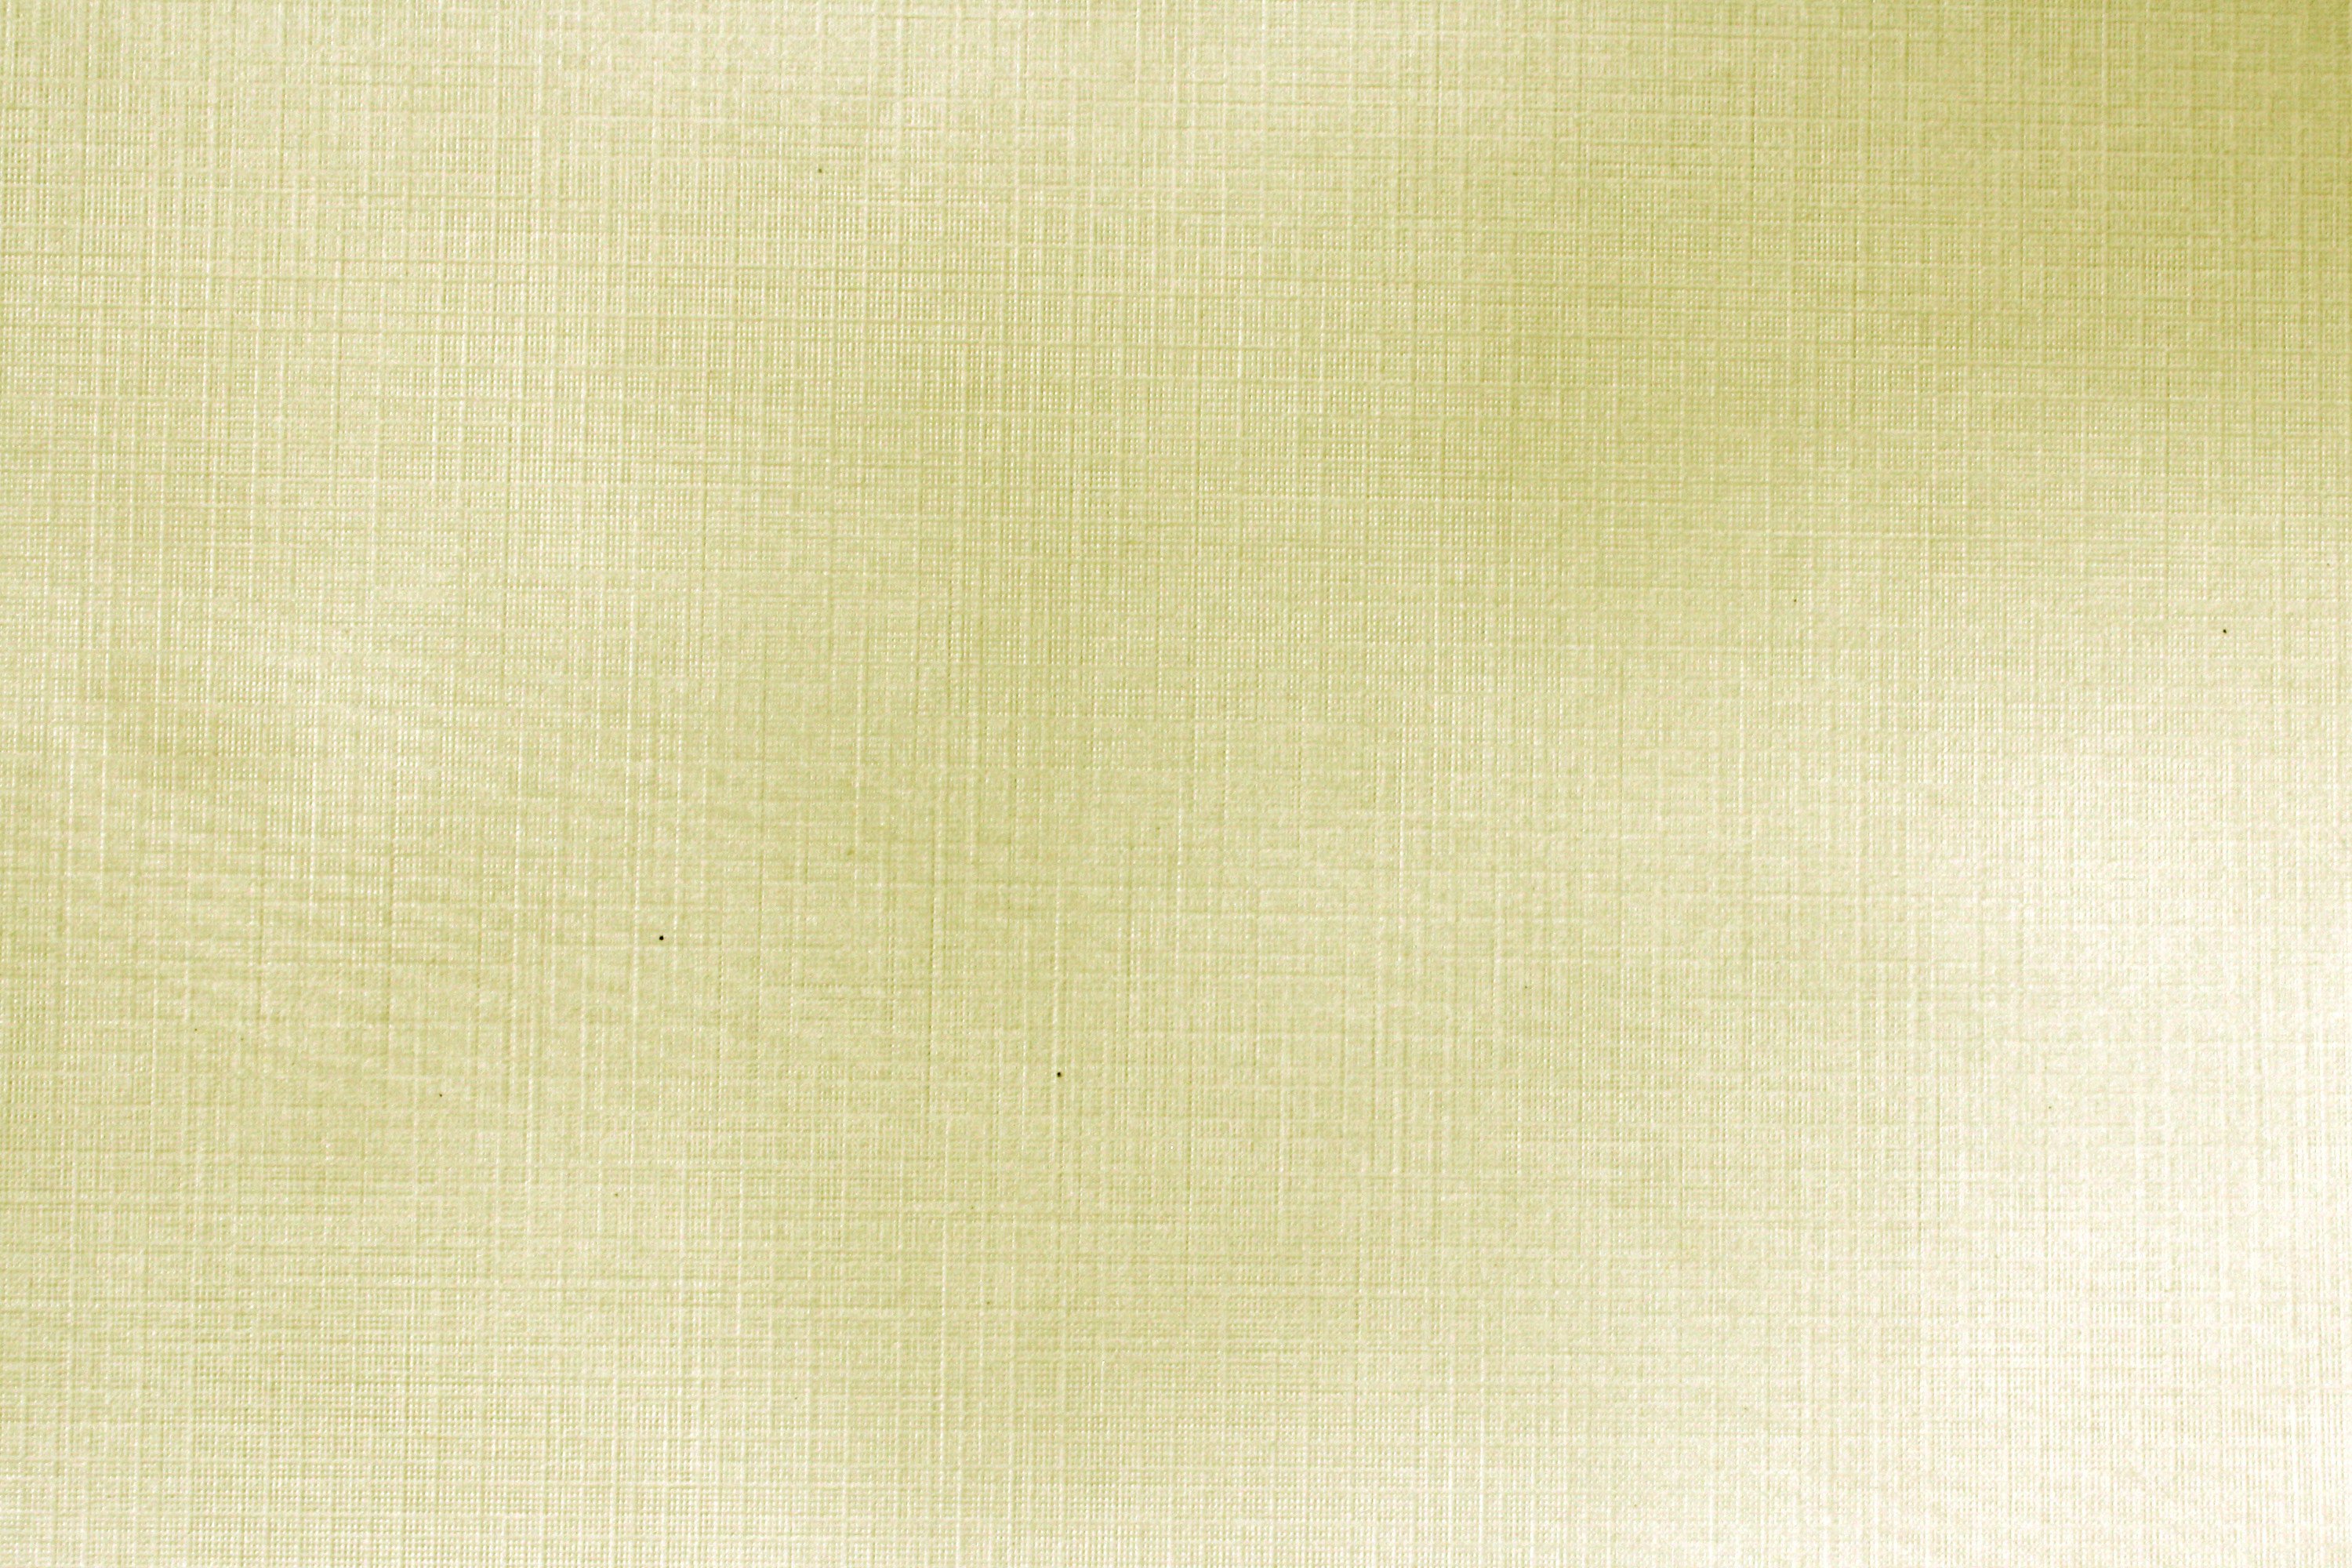 Golden Linen Paper Texture Picture Free Photograph Photos Public Domain